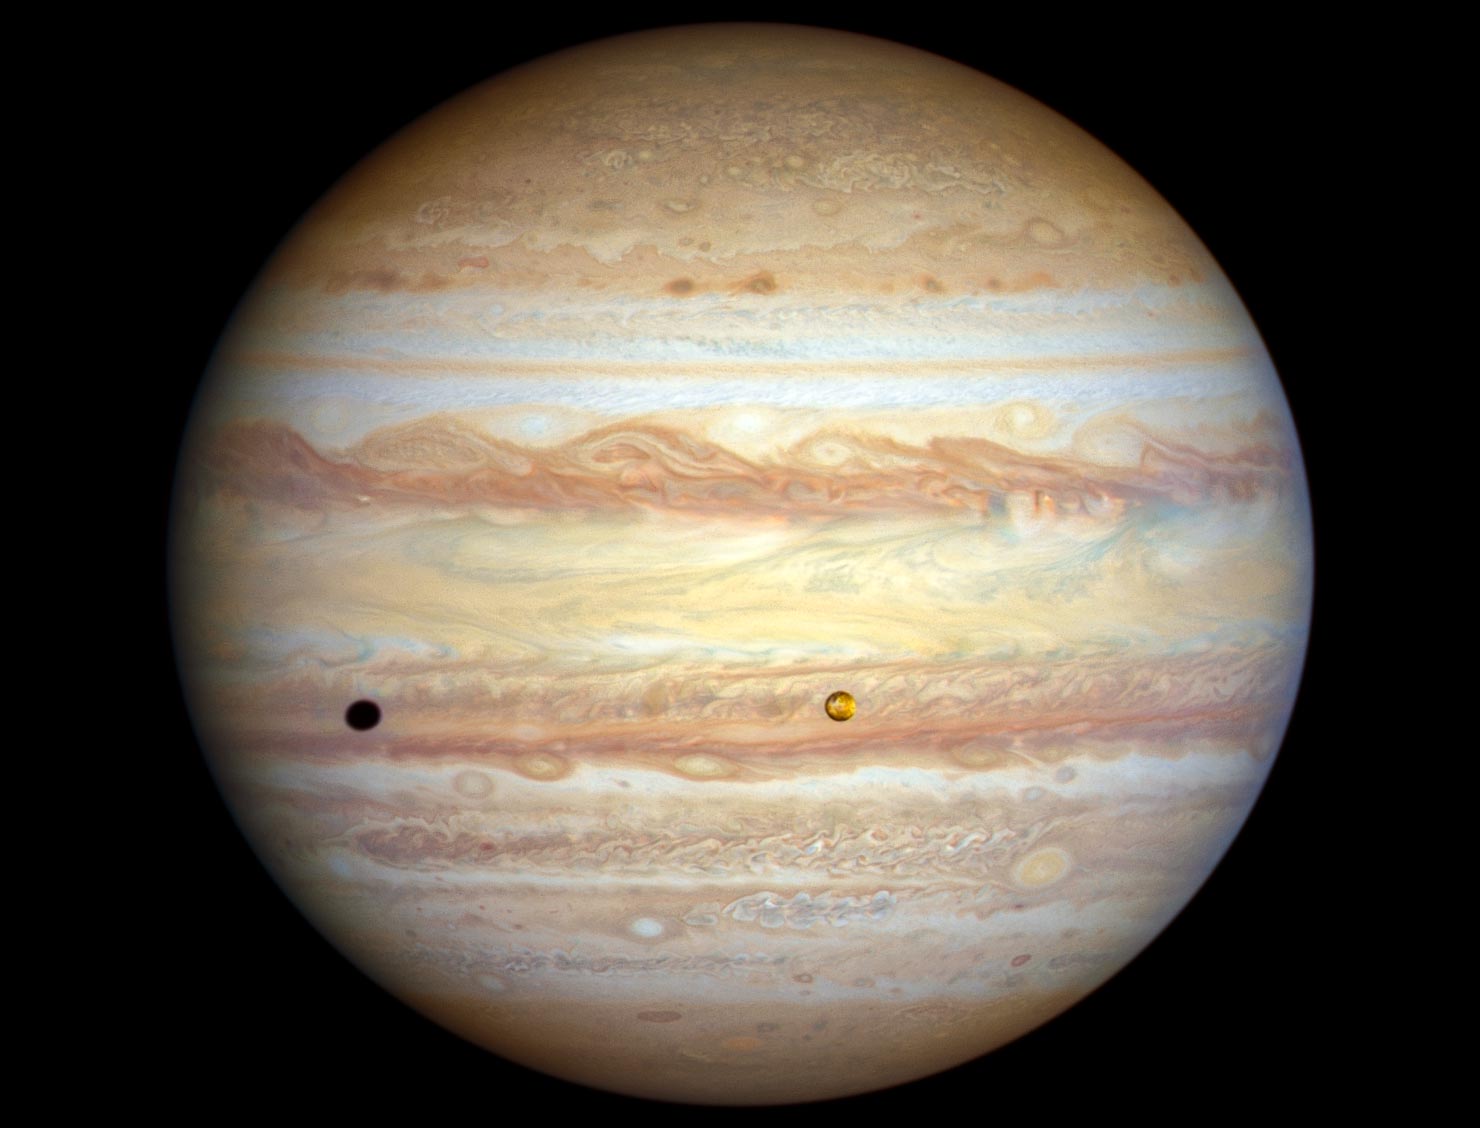 Hubble espia mudanças sazonais espetaculares em Júpiter e Urano